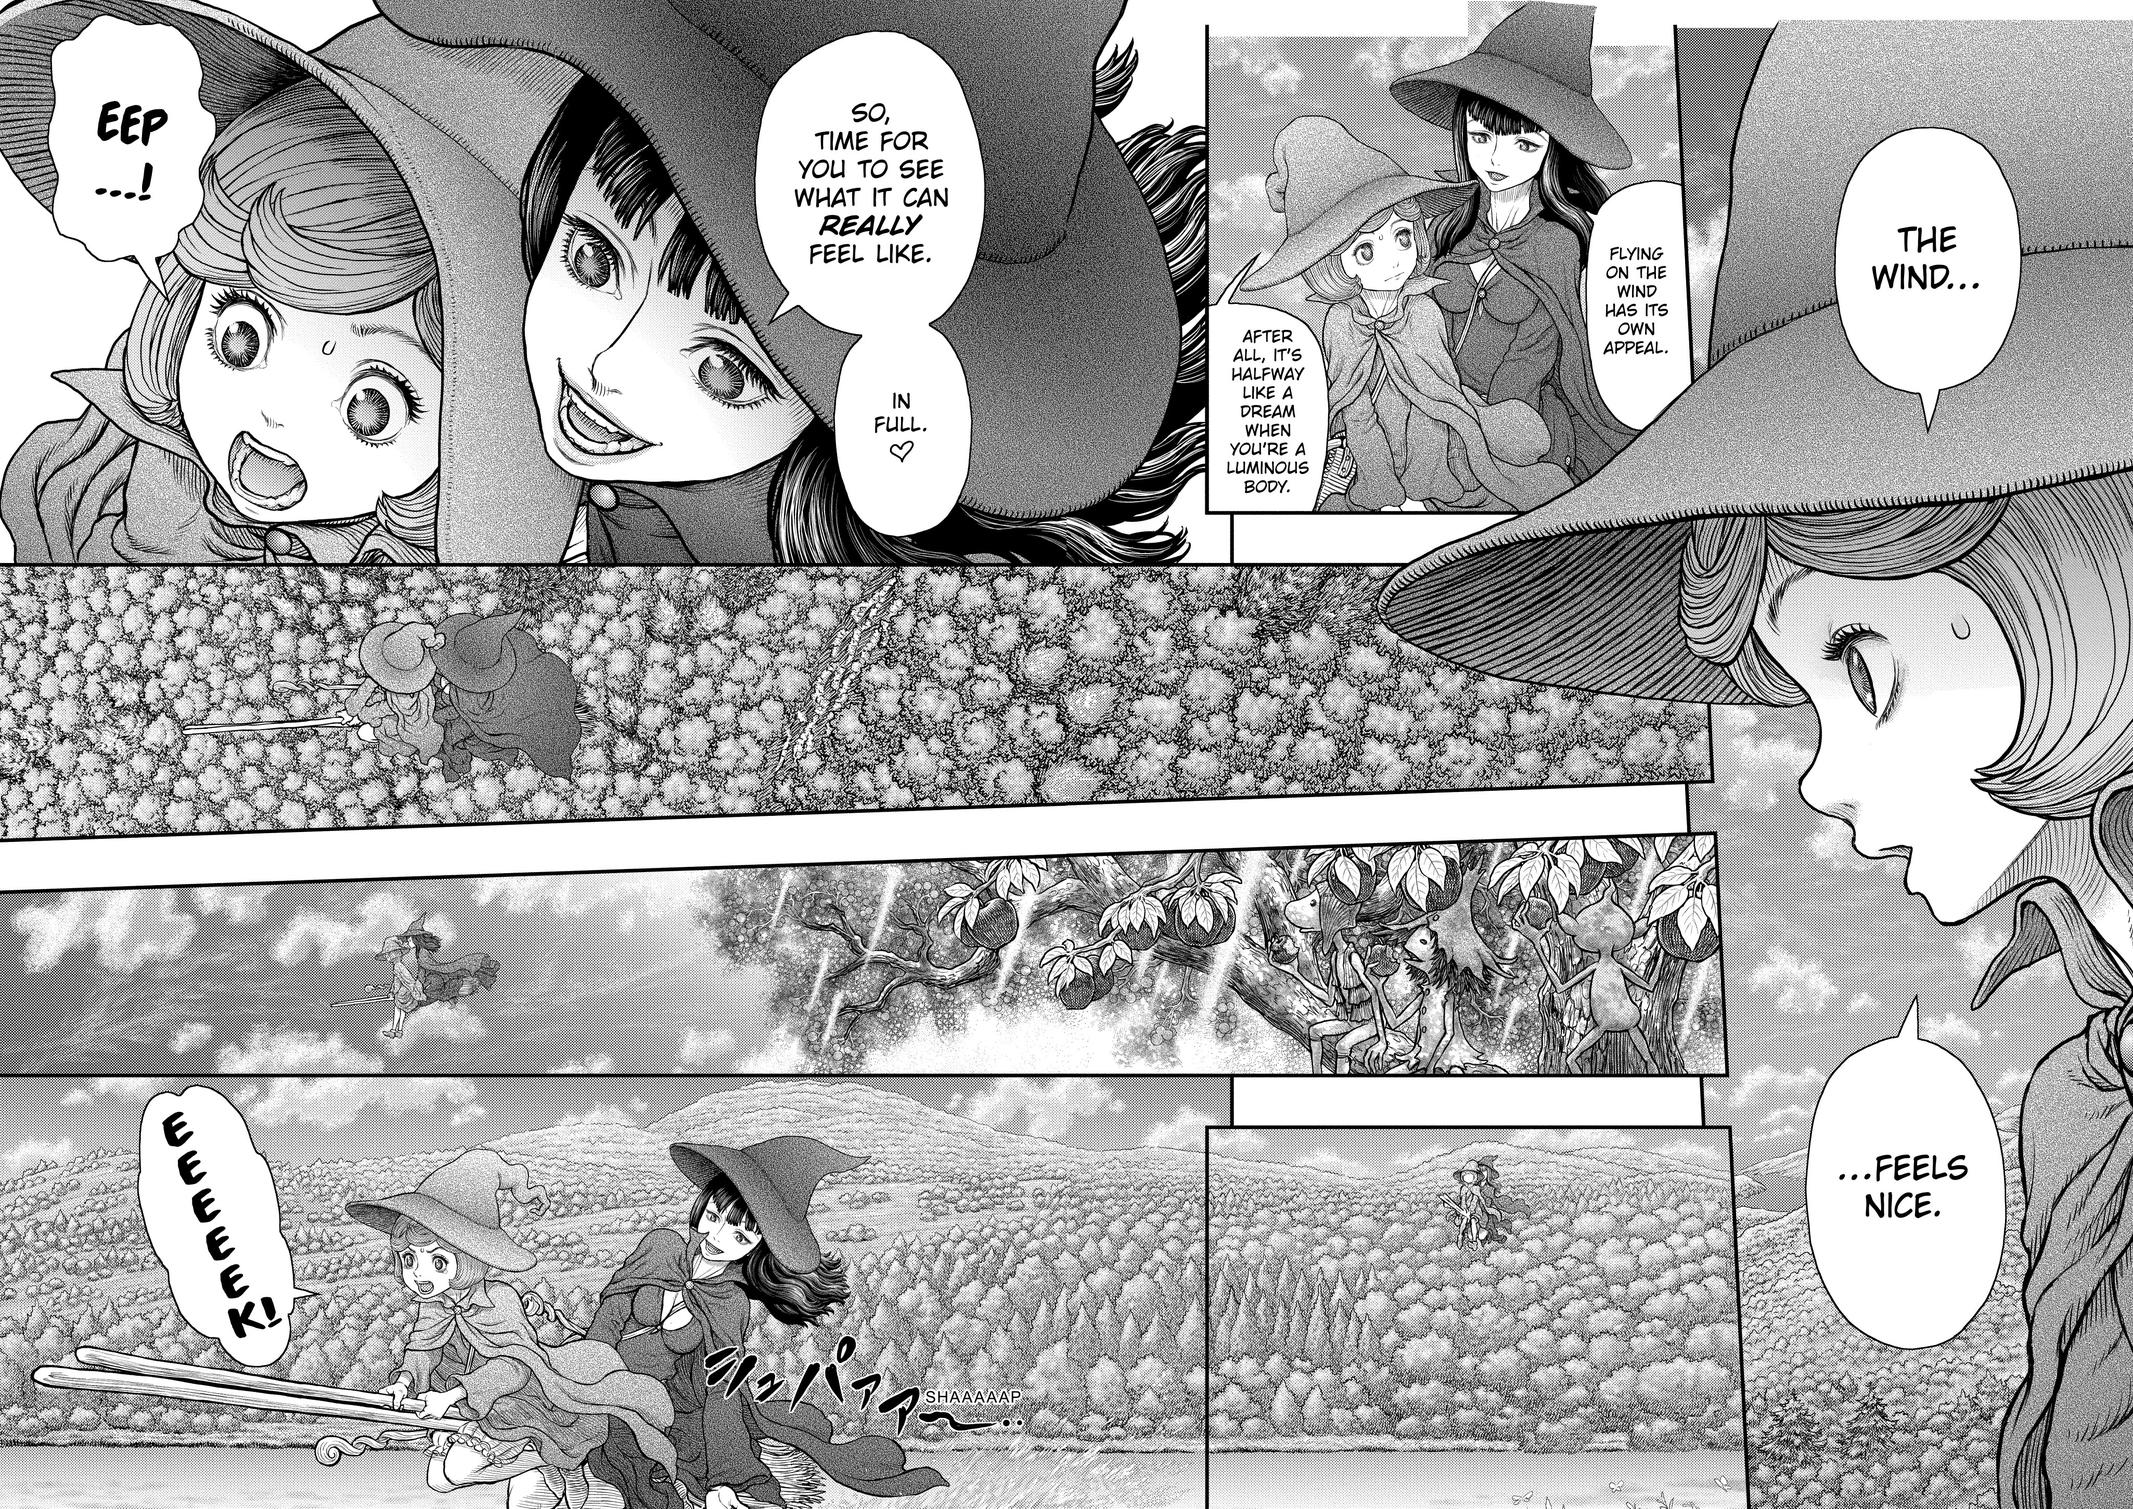 Berserk Manga Chapter 361 image 08